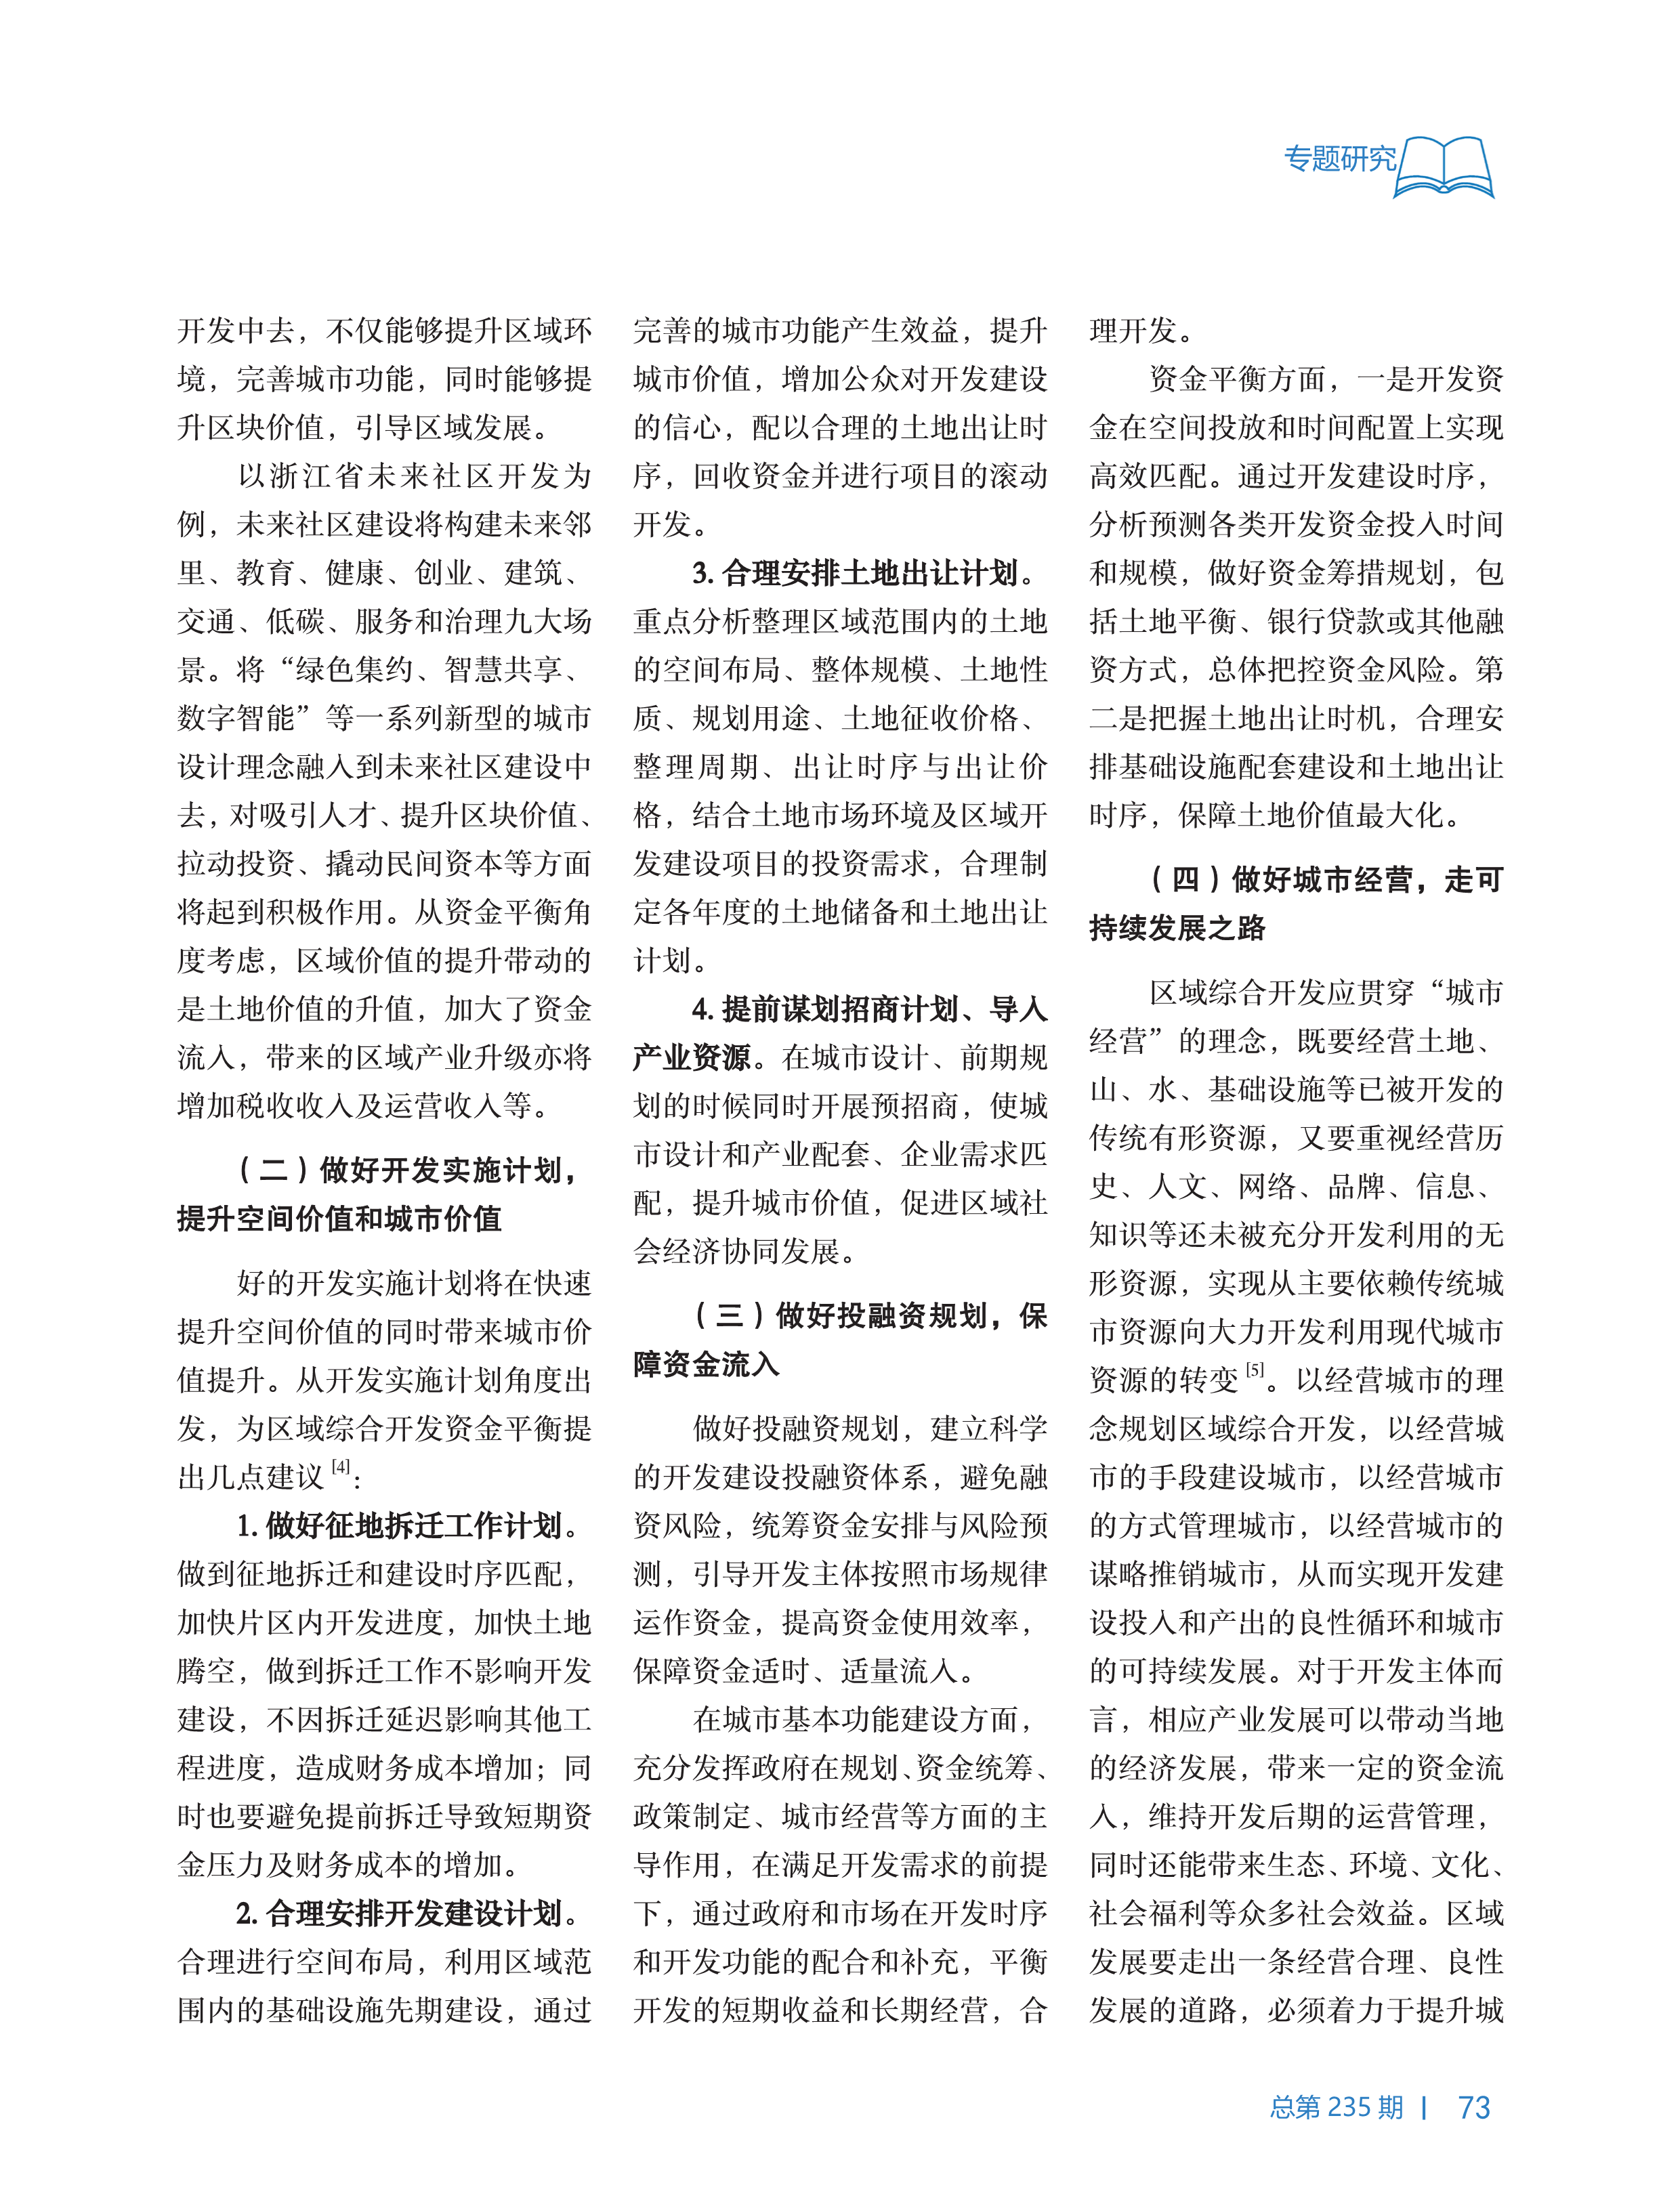 中国工程咨询2019第12期_73